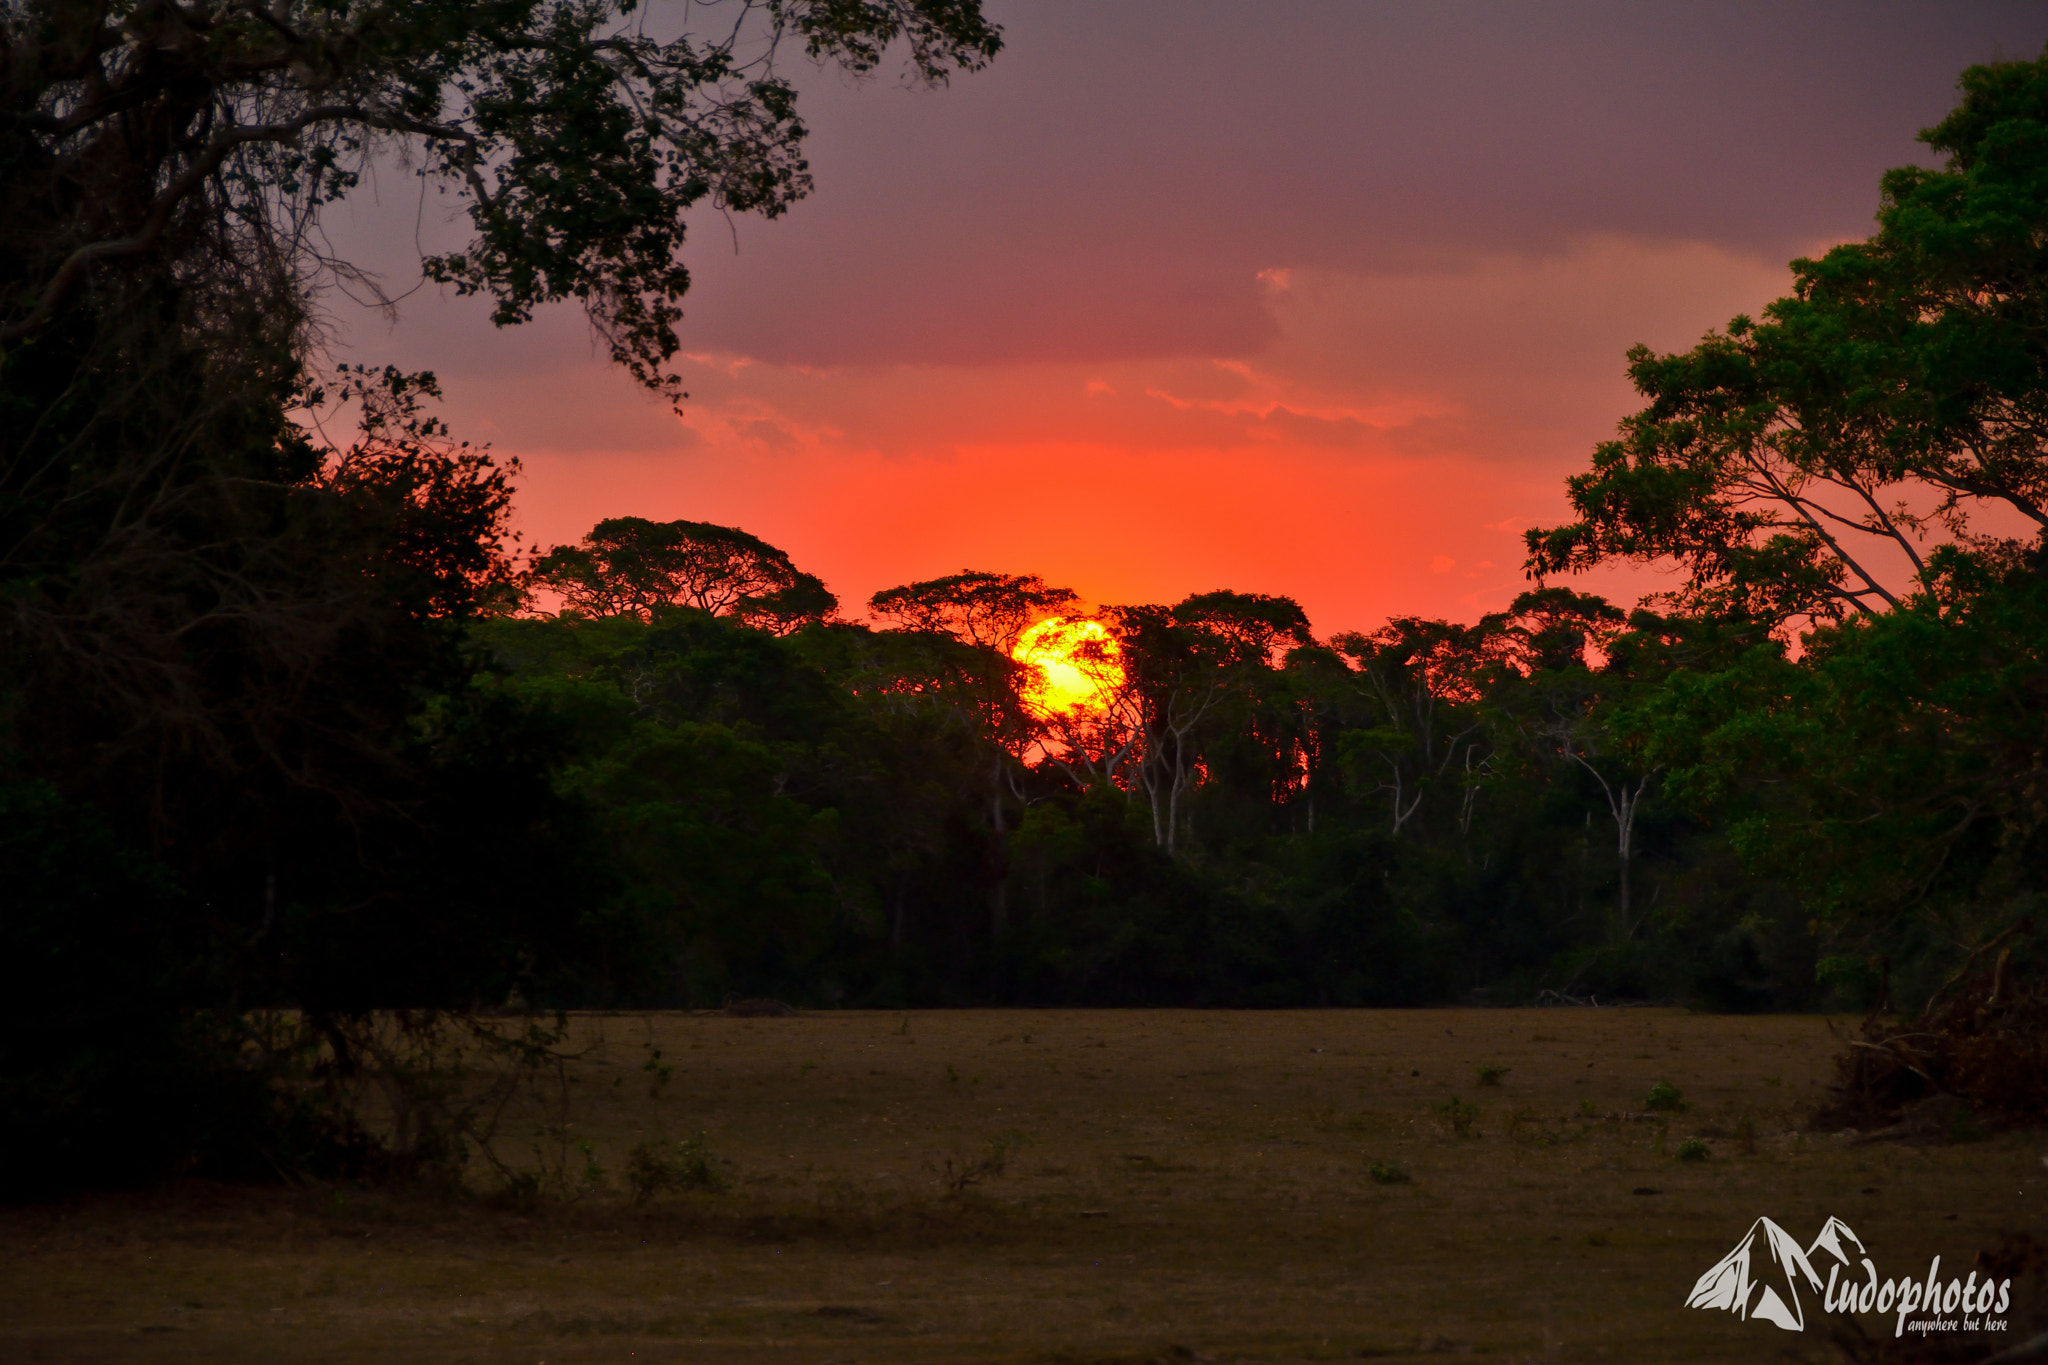 Nikon D7100 + Nikkor 500mm f/4 P ED IF sample photo. Pantanal sunset photography